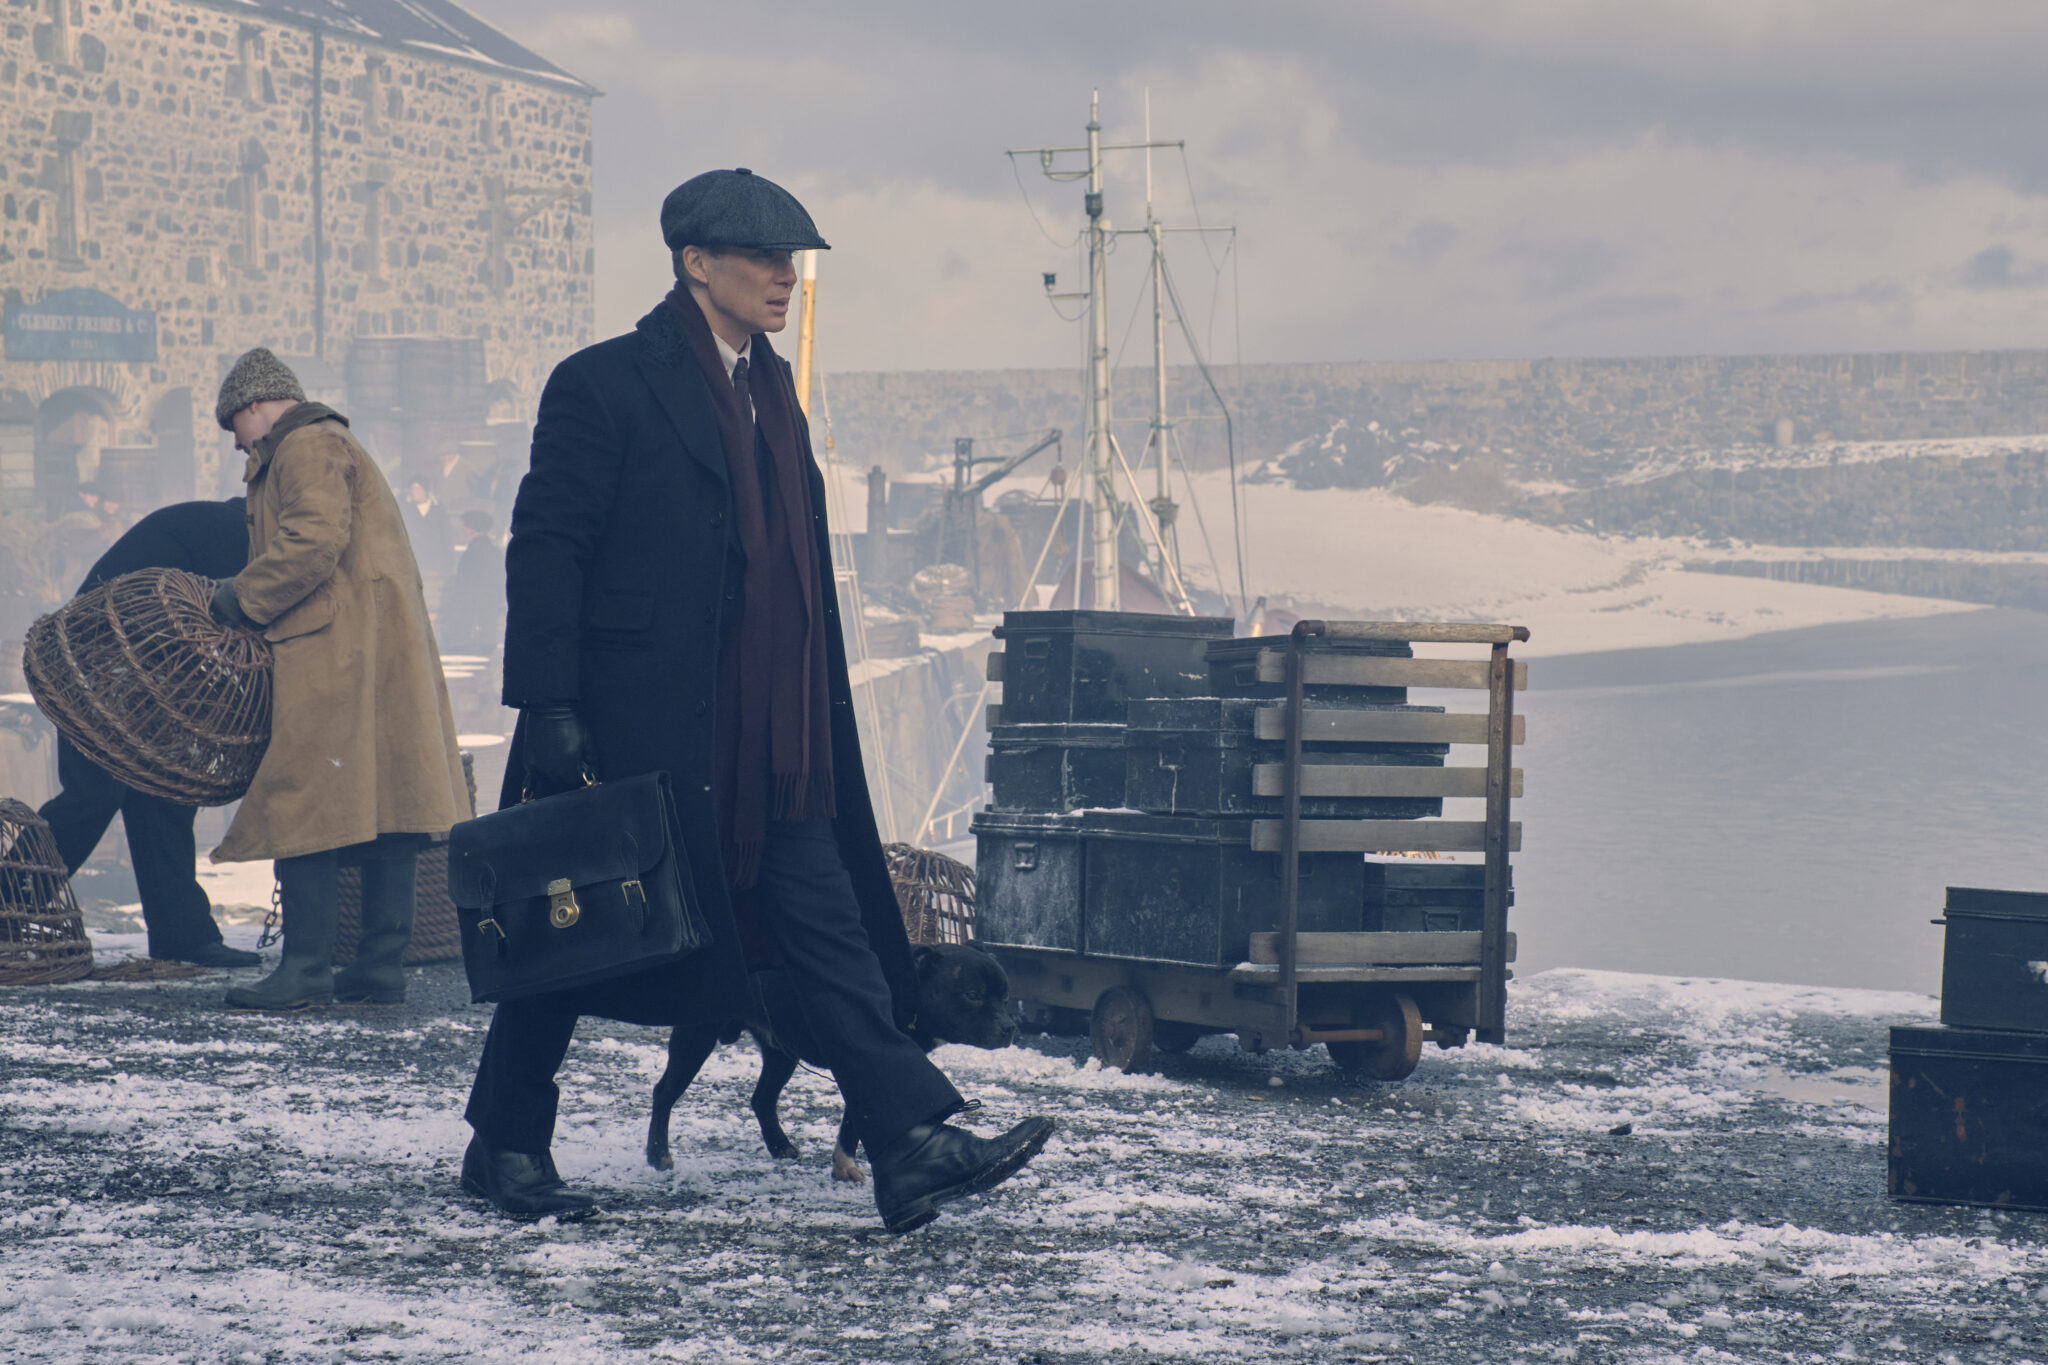 Auf dem Bild sieht man einen wandelnden Tommy Shelby am Hafen in Begleitung eines Hundes - Peaky Blinders